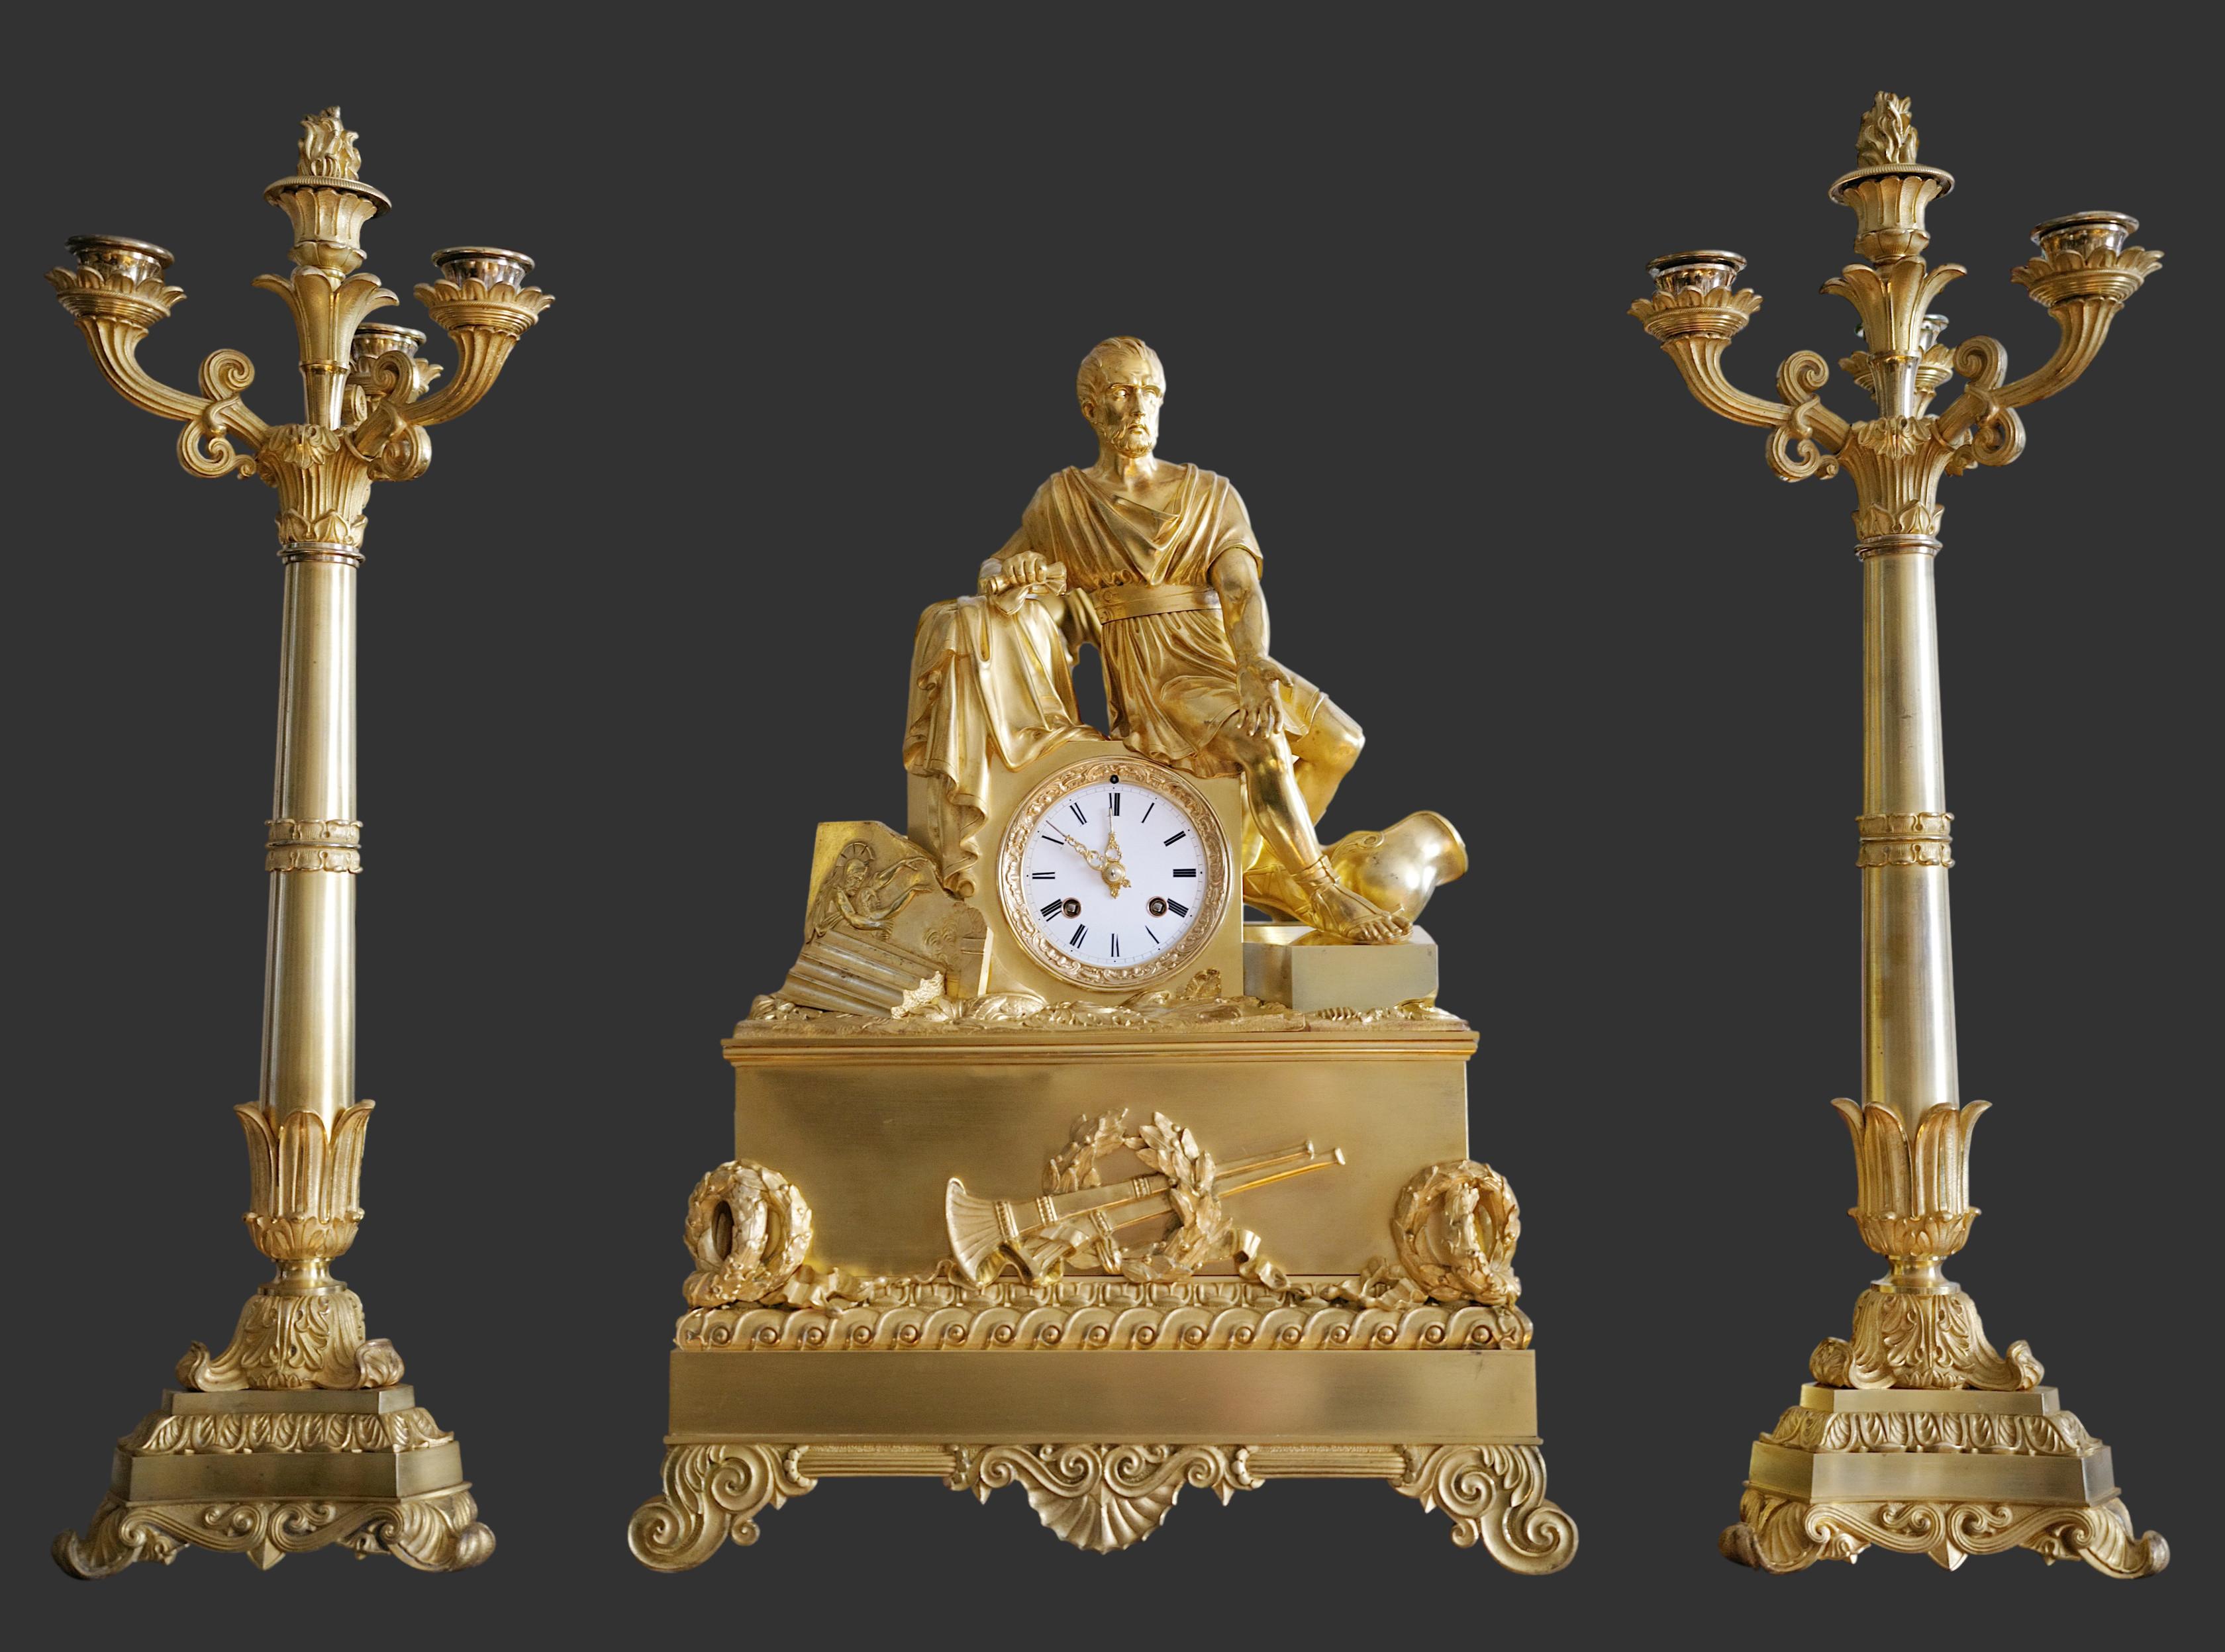 Französisch Restaurierung Bronze Kaminsims Uhr Set, Frankreich, 1820-1830s. 1 Uhr und zwei Kandelaber. Original goldene Patina 2 Jahrhunderte alt. Stellt einen römischen Feldherrn dar, der auf dem Höhepunkt seines Ruhmes sitzt. Die Ikonographie